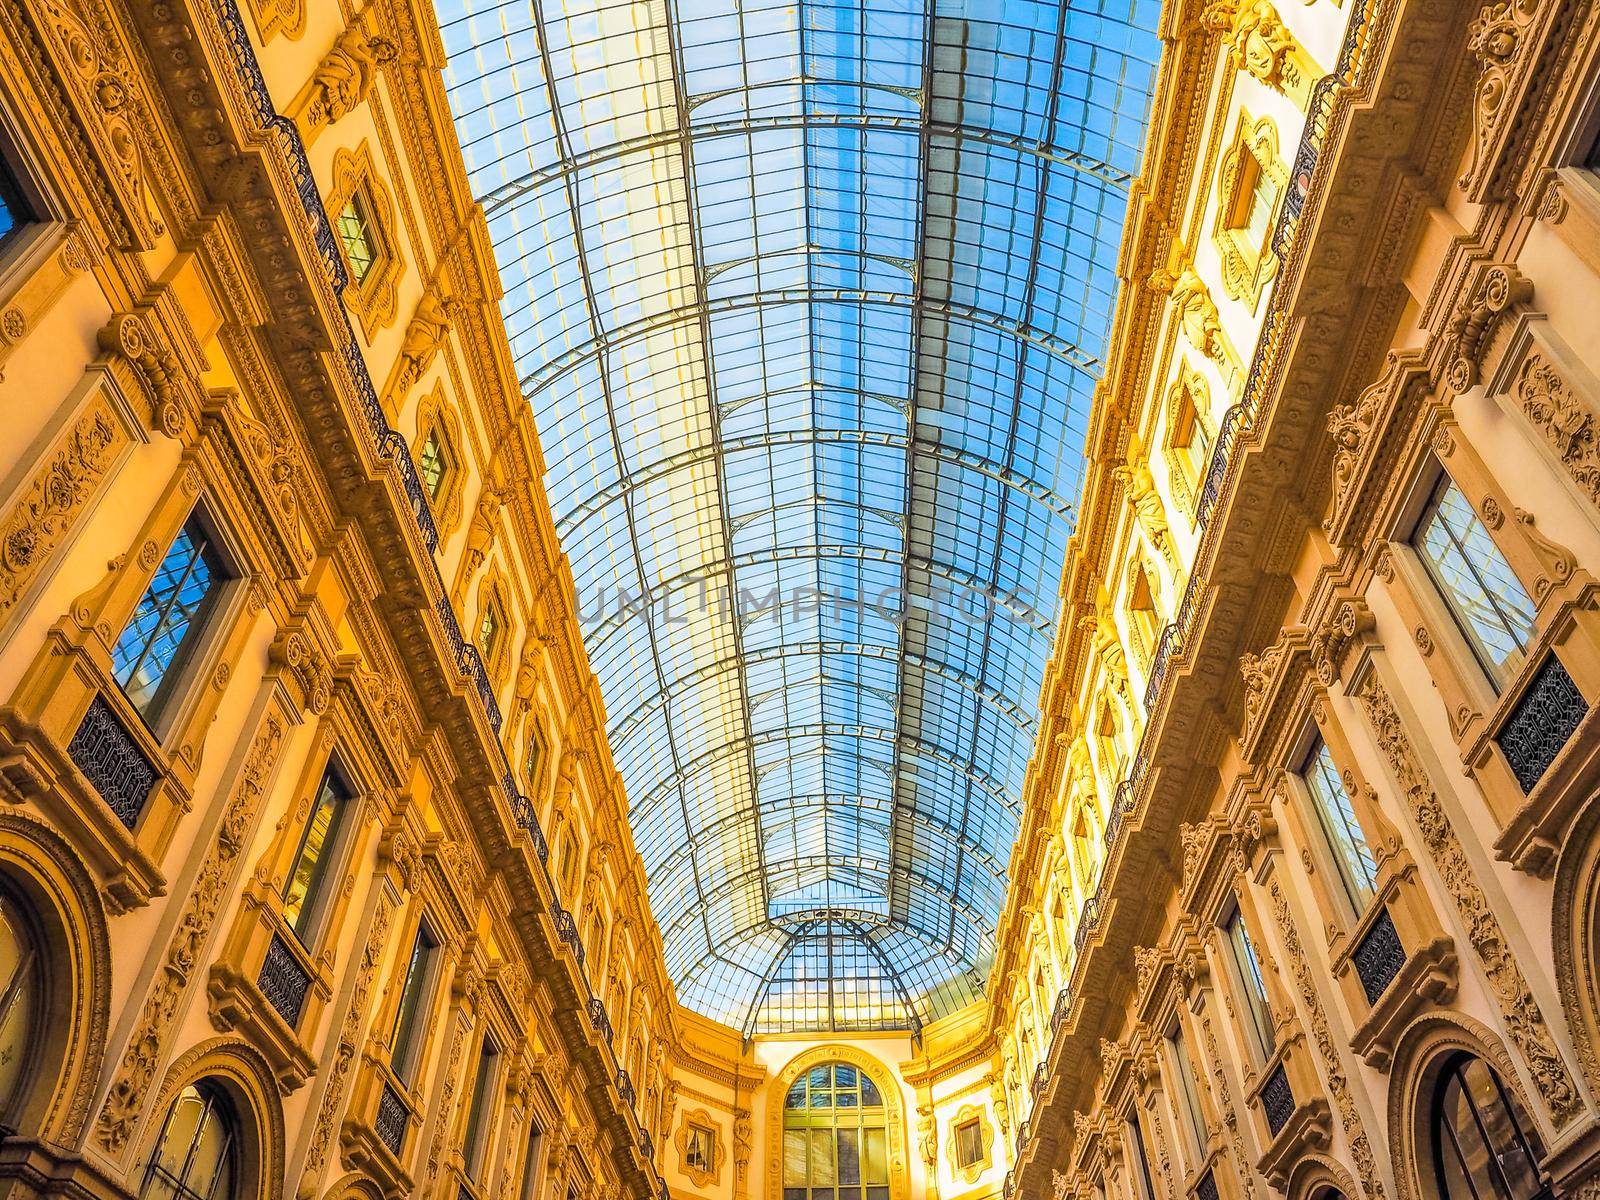 Galleria Vittorio Emanuele II in Milan, Italy HDR